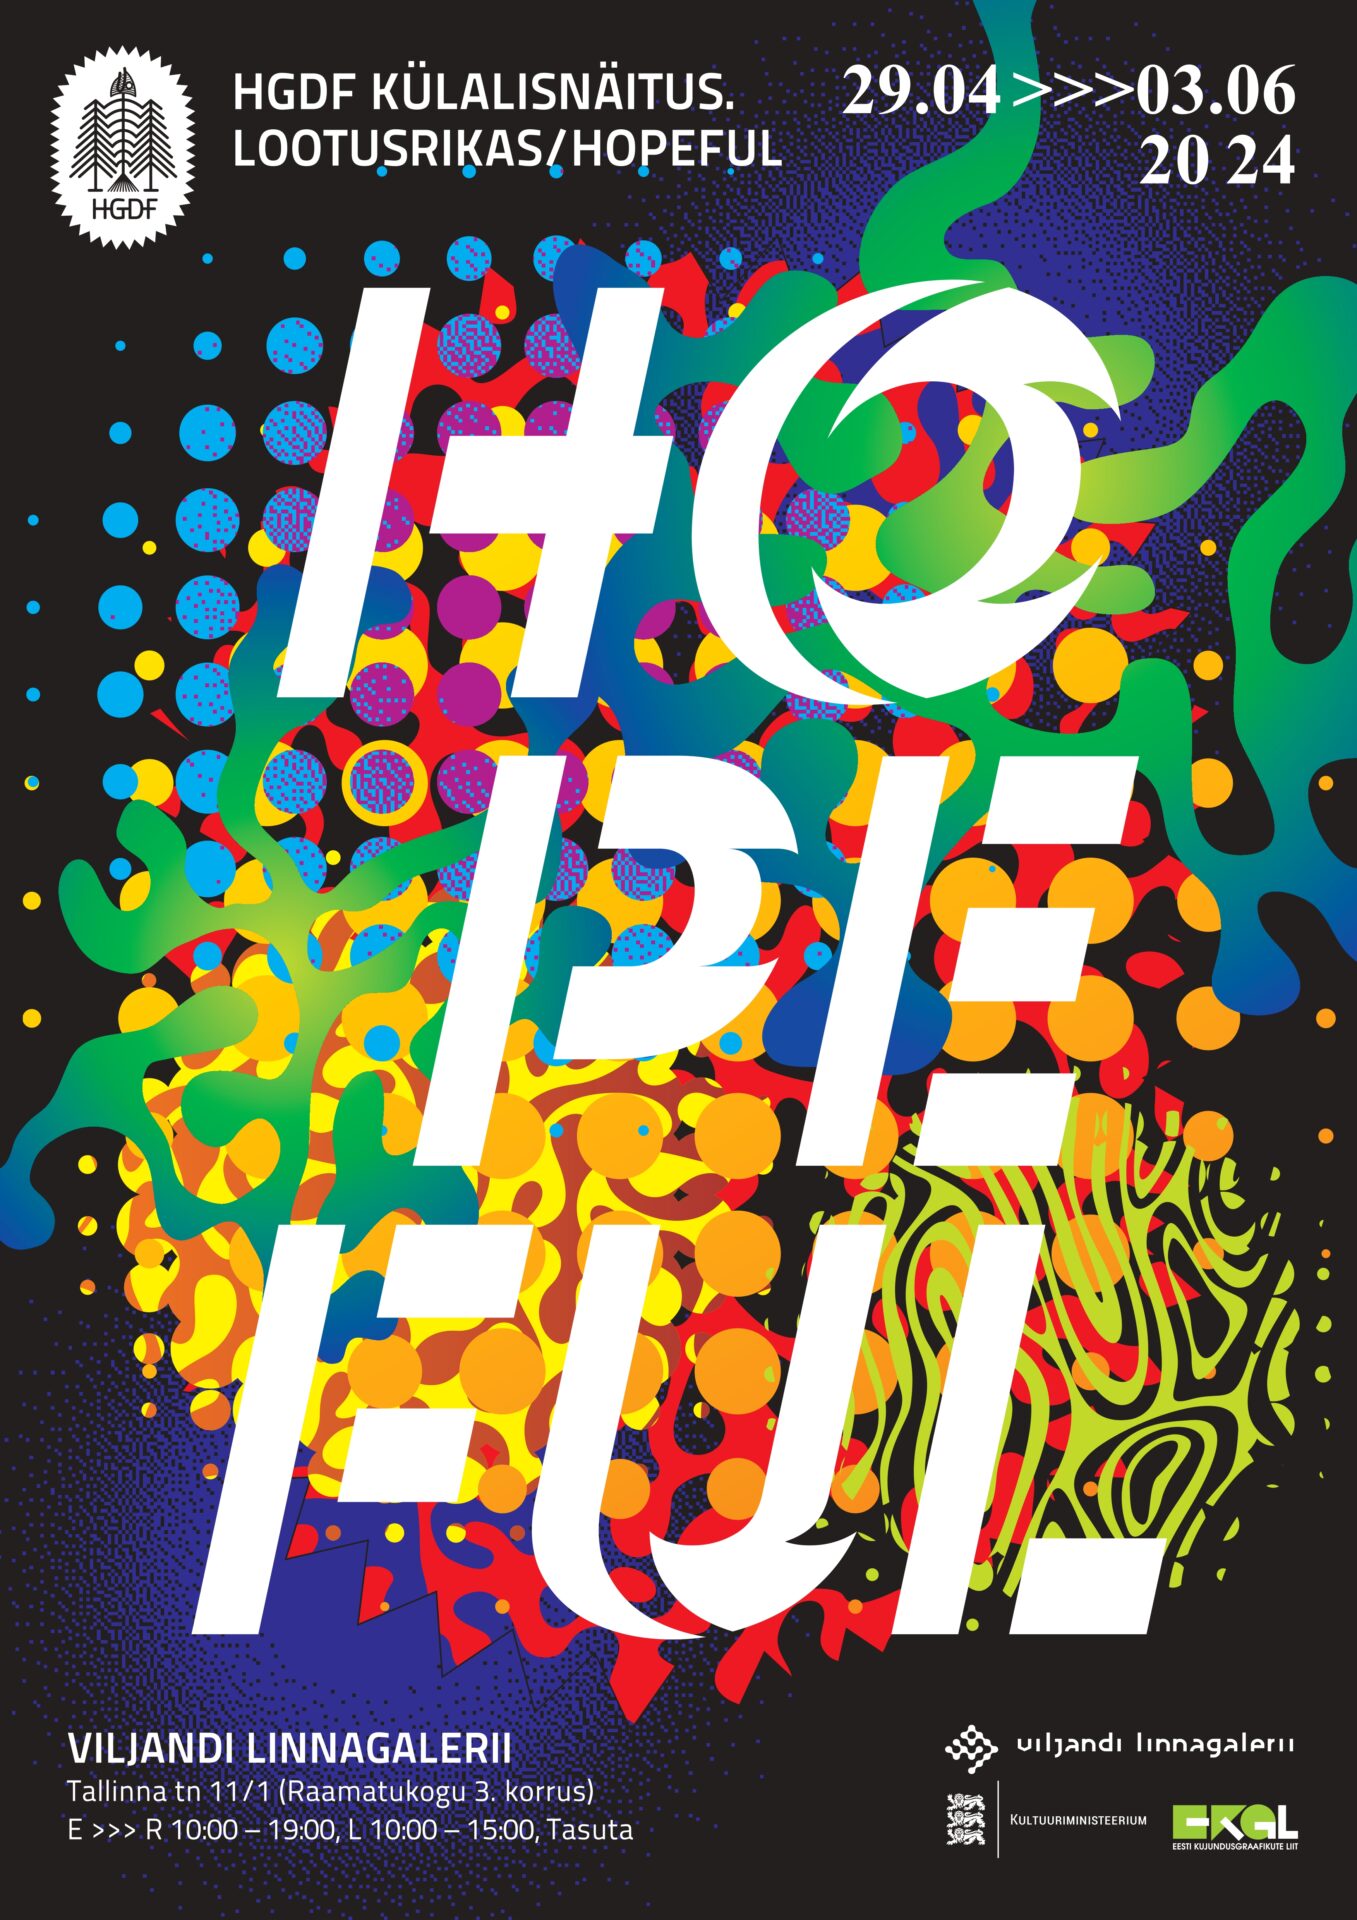 HGDF rahvusvahelise kujundusgraafika näituse „LOOTUSRIKAS/HOPEFUL“ plakat